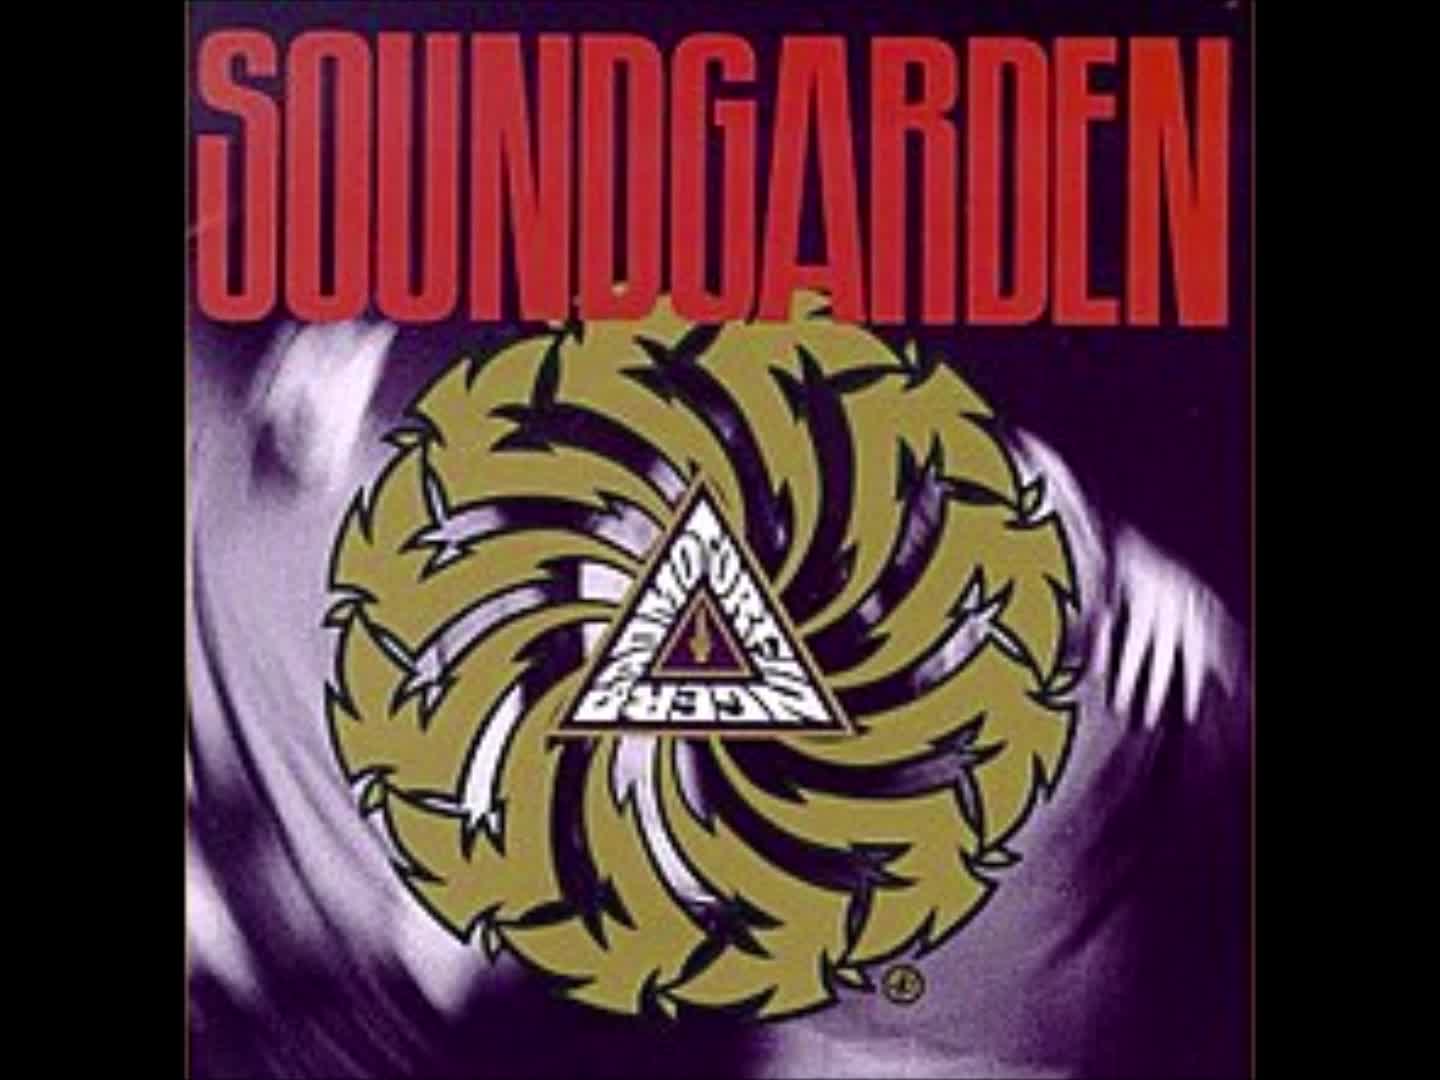 Soundgarden - Drawing Flies